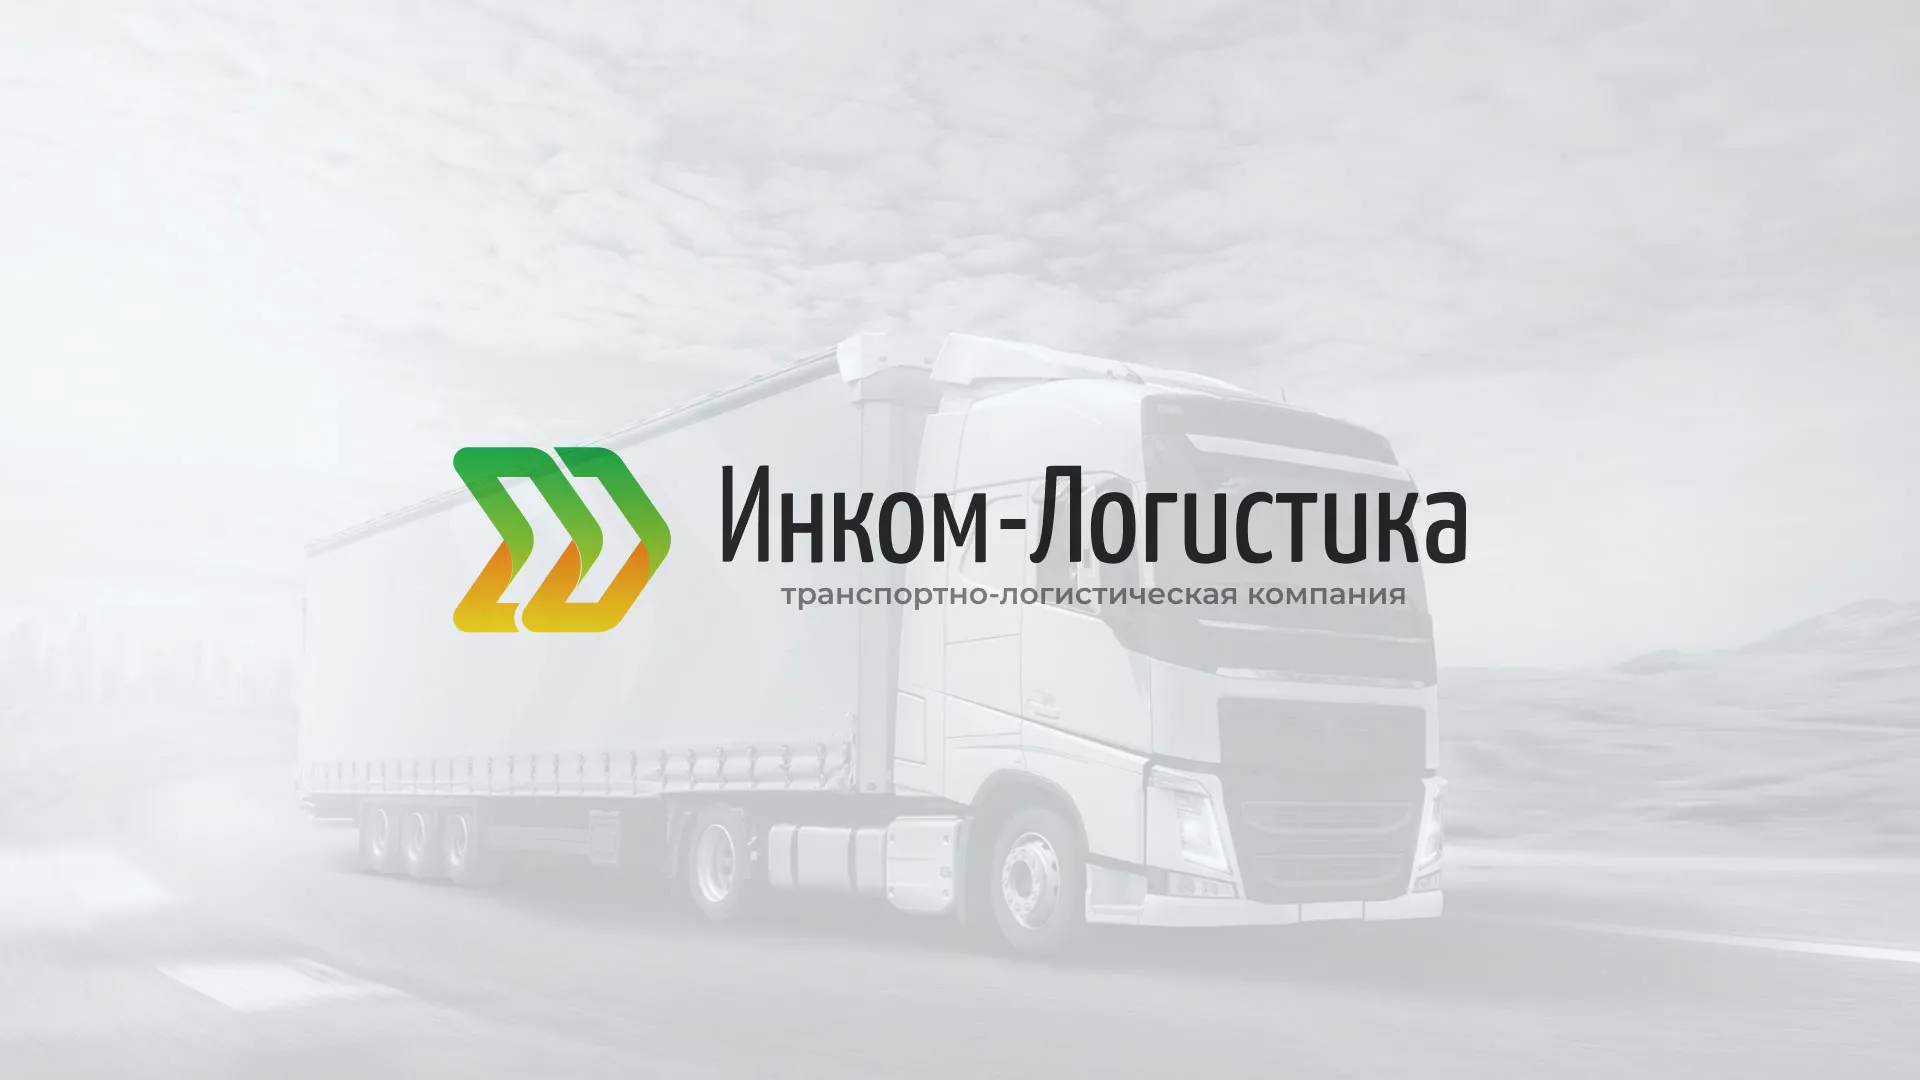 Разработка логотипа и сайта компании «Инком-Логистика» в Сольвычегодске